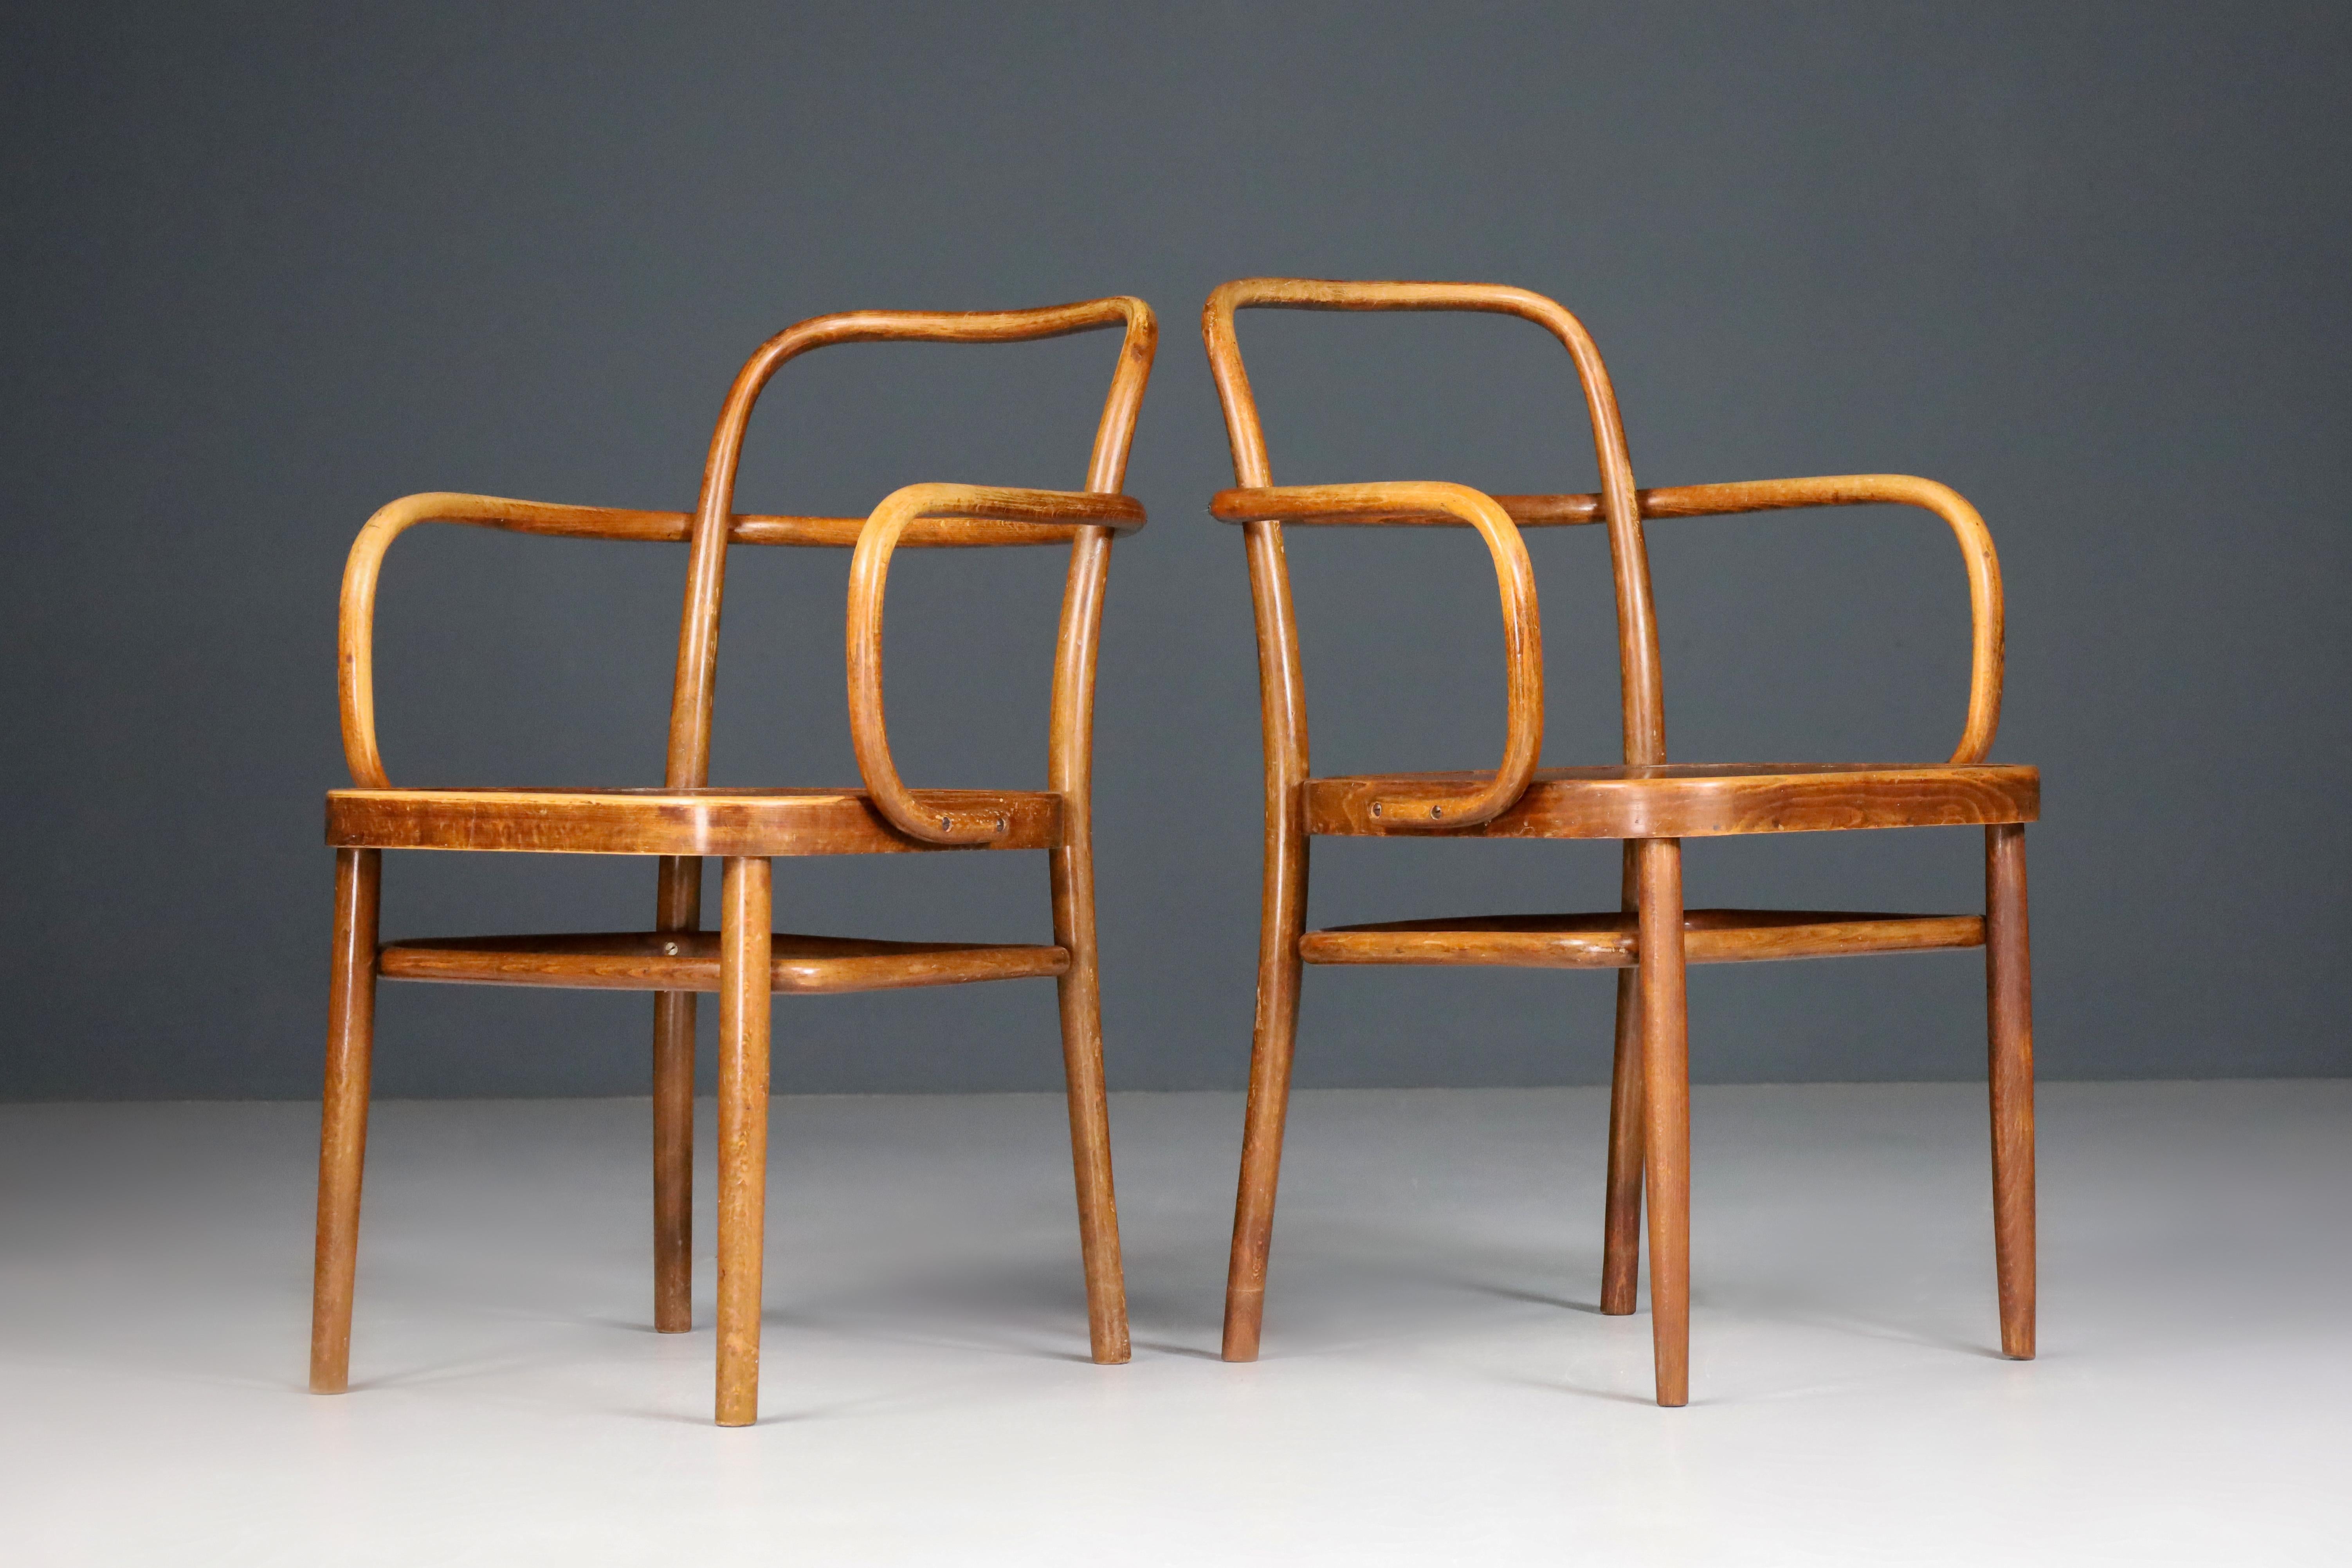 Fauteuils d'Adolf Gustav Schneck n° A 64 F Autriche 1927.

Les fauteuils en bois courbé de hêtre modèle n° A 64 F ont été conçus par Gustav Adolf Schneck et fabriqués par Thonet à la fin des années 1920. Ces fauteuils sont en excellent état